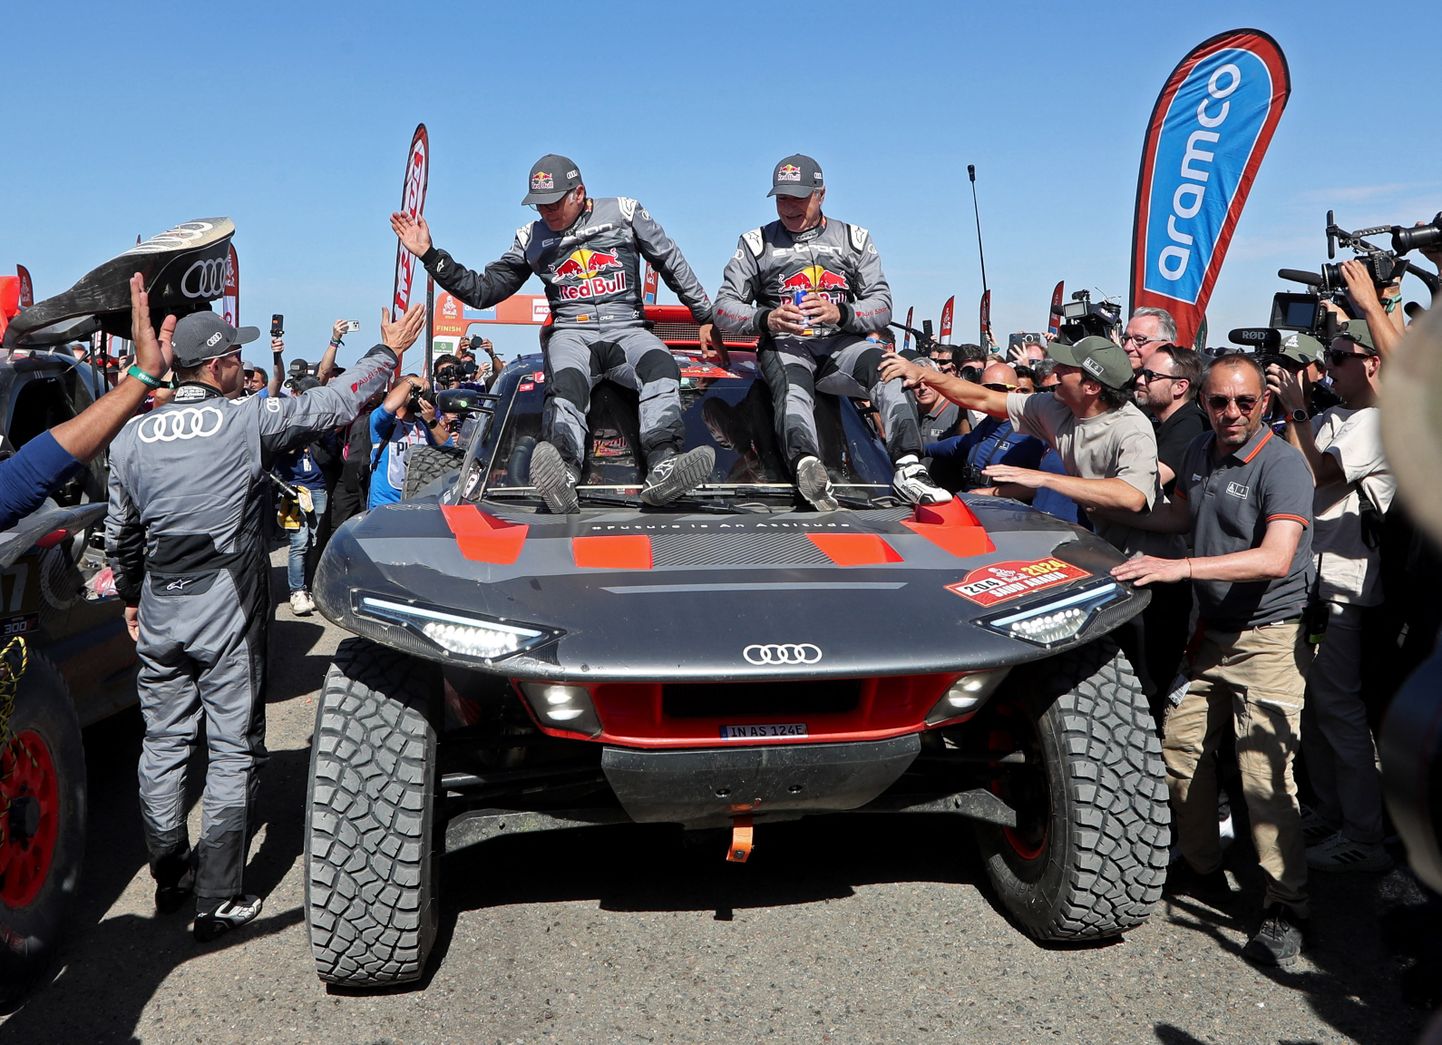 Spāņu pilots Karloss Sainss svin ceturto uzvaru rallijreidā "Dakara"